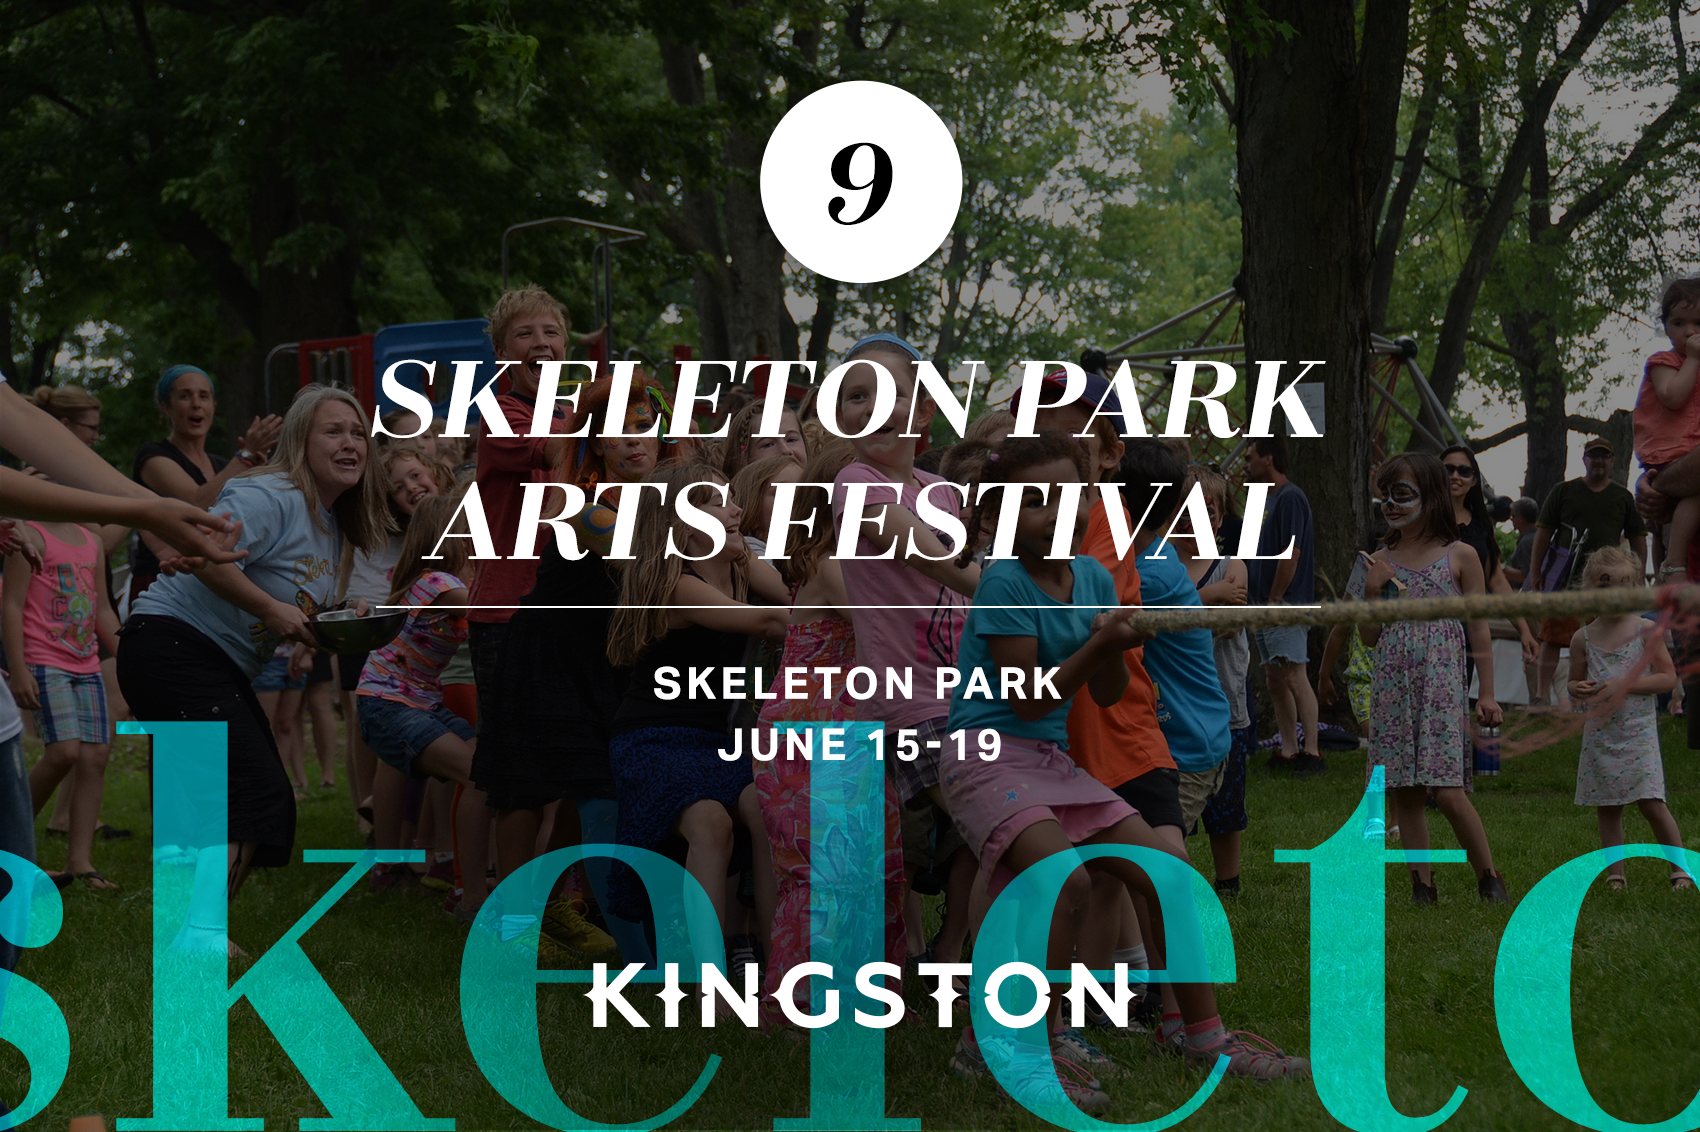 Skeleton Park Arts Festival